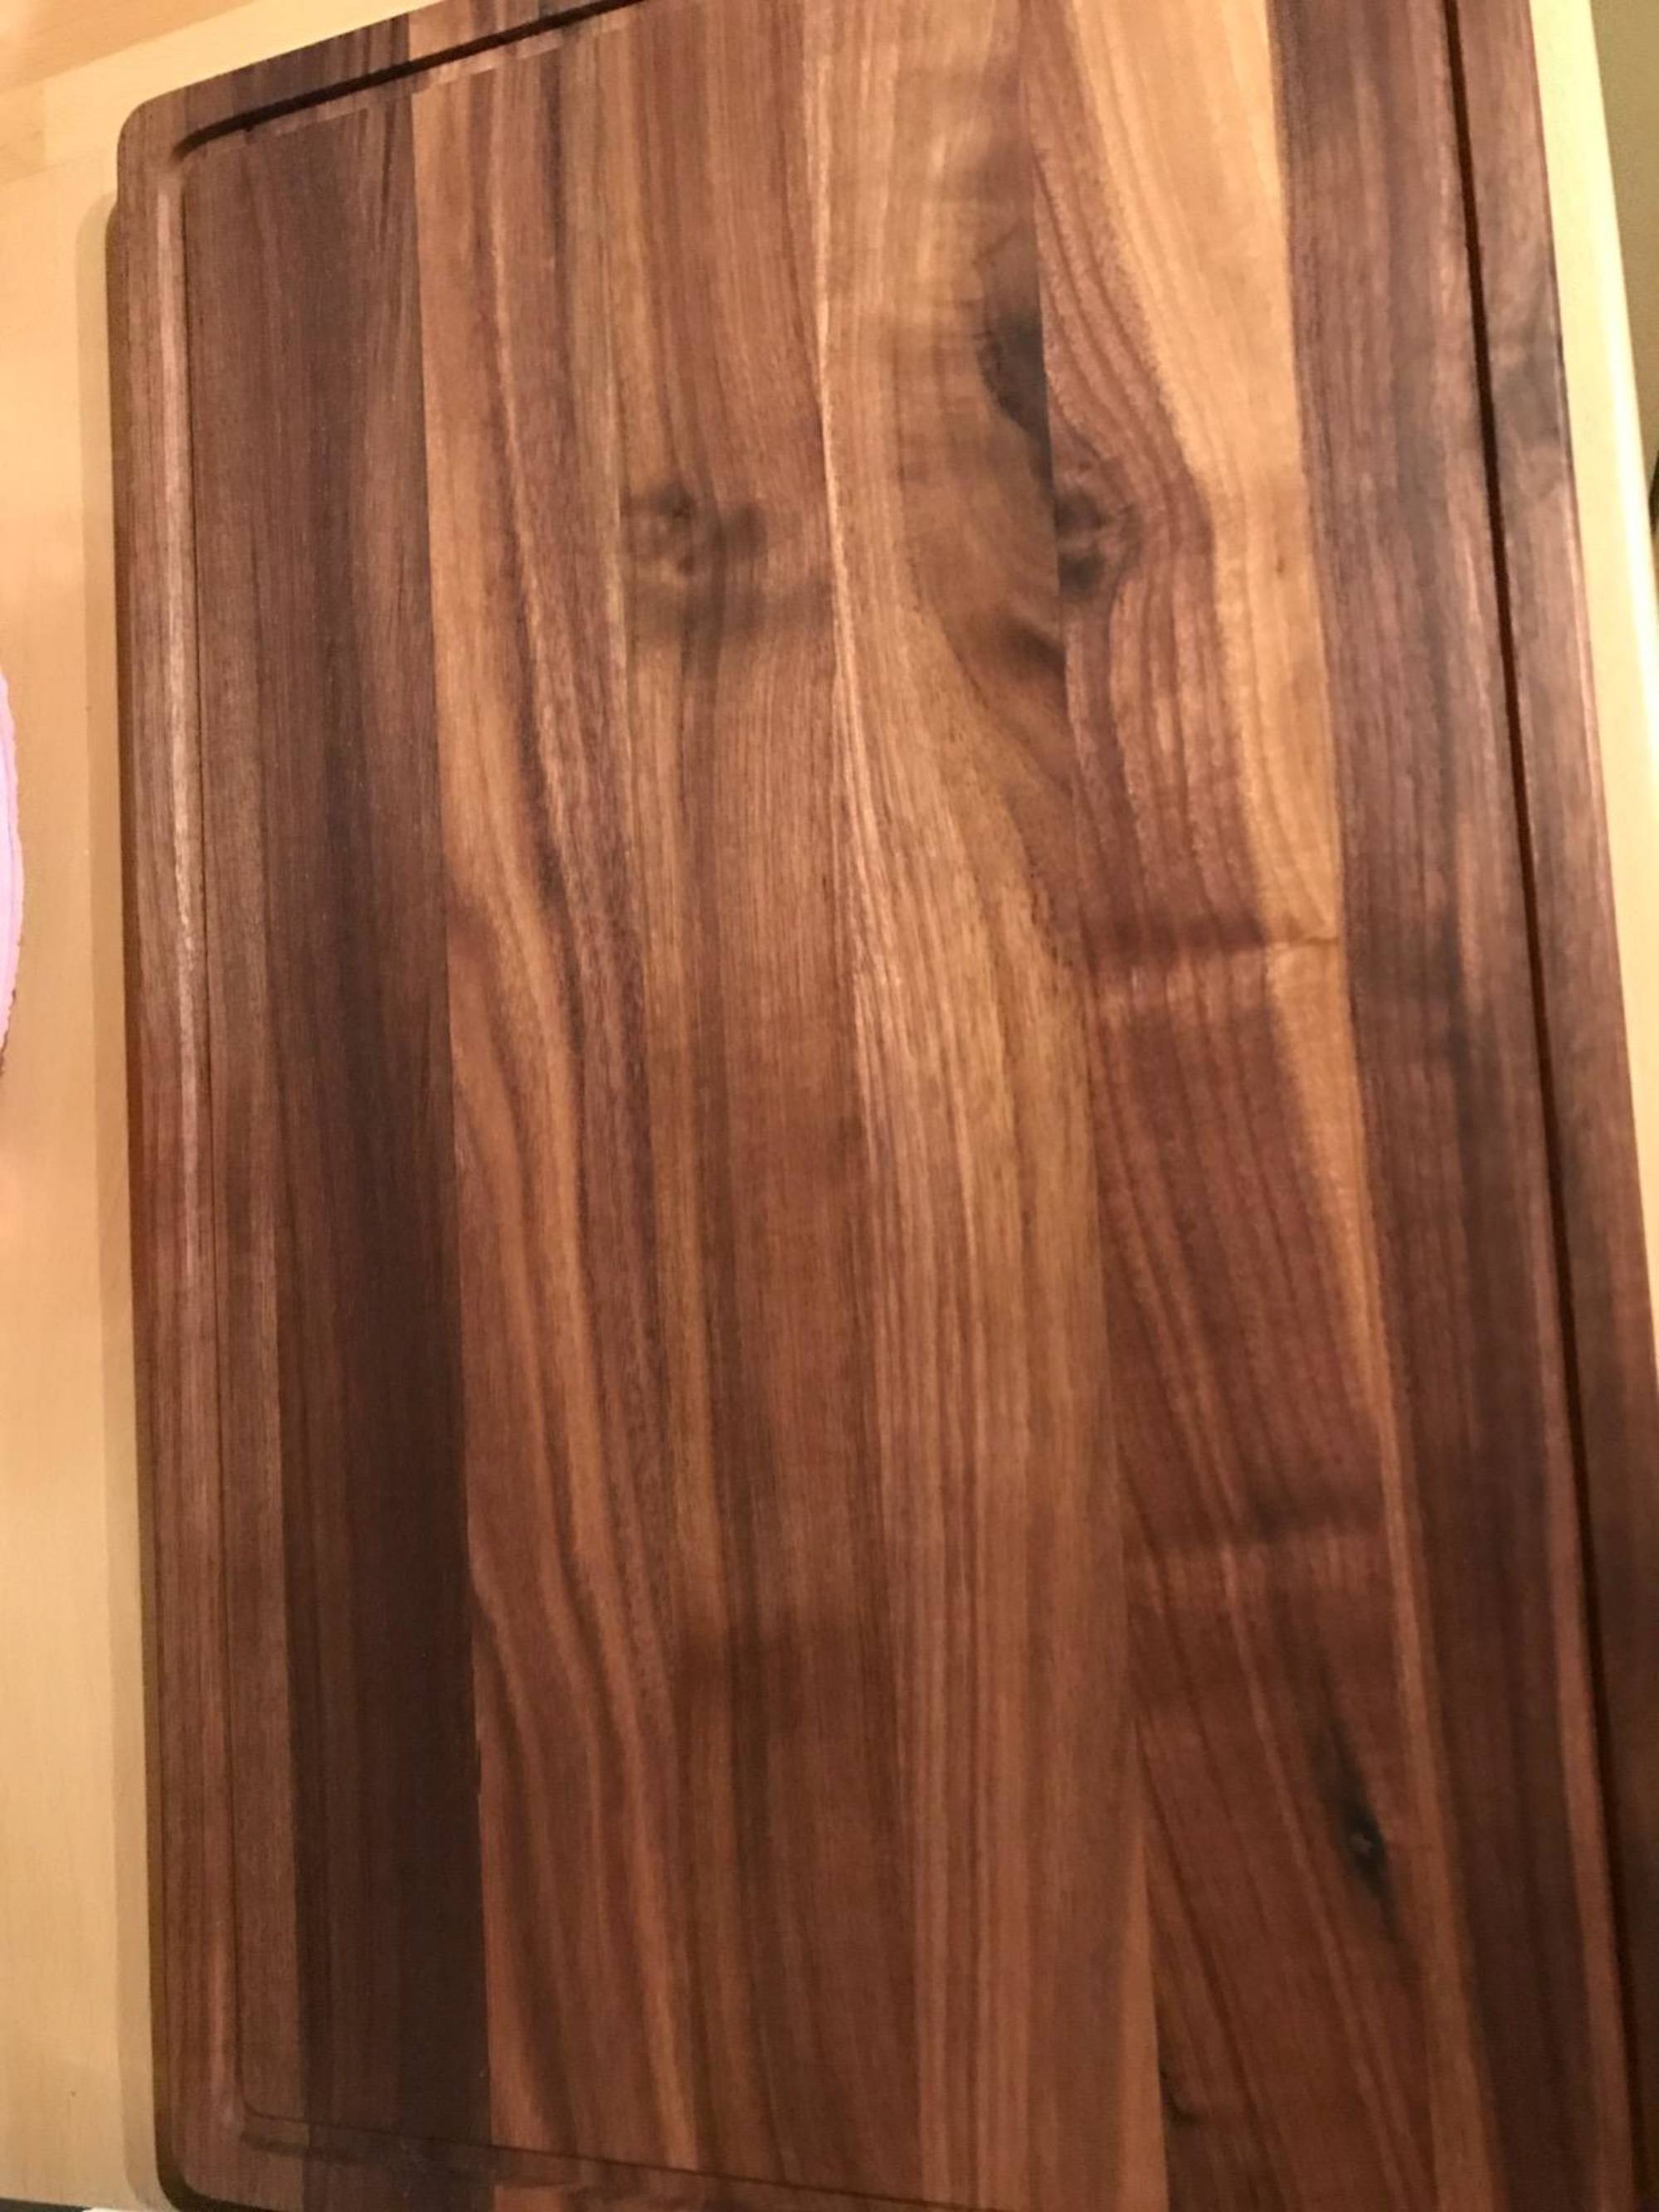 Medium Walnut Wood Cutting Board by Virginia Boys Kitchens – Cityhome